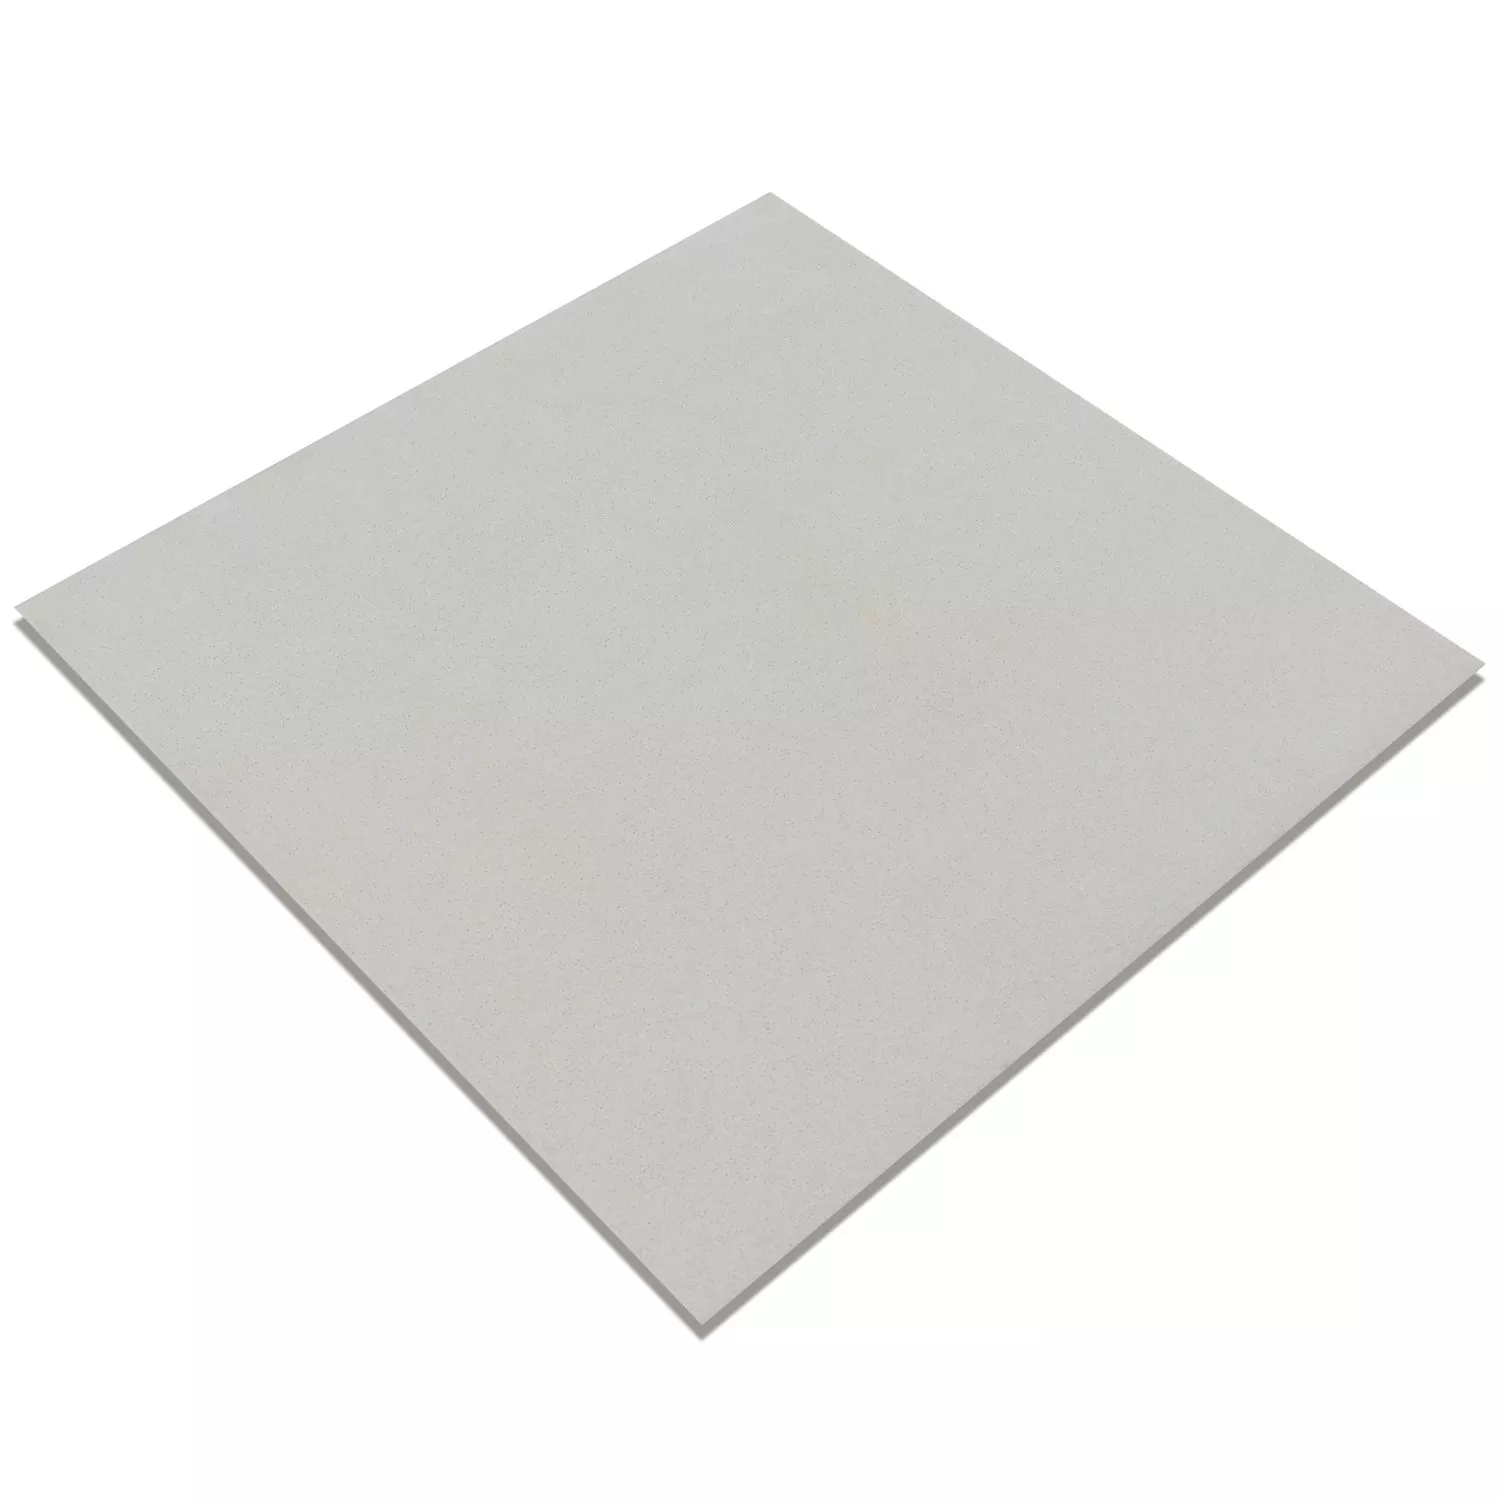 Πρότυπο Όψη Πλακιδίων Tσιμέντου Gotik Πλακάκι Bάσης Ασπρο 22,3x22,3cm